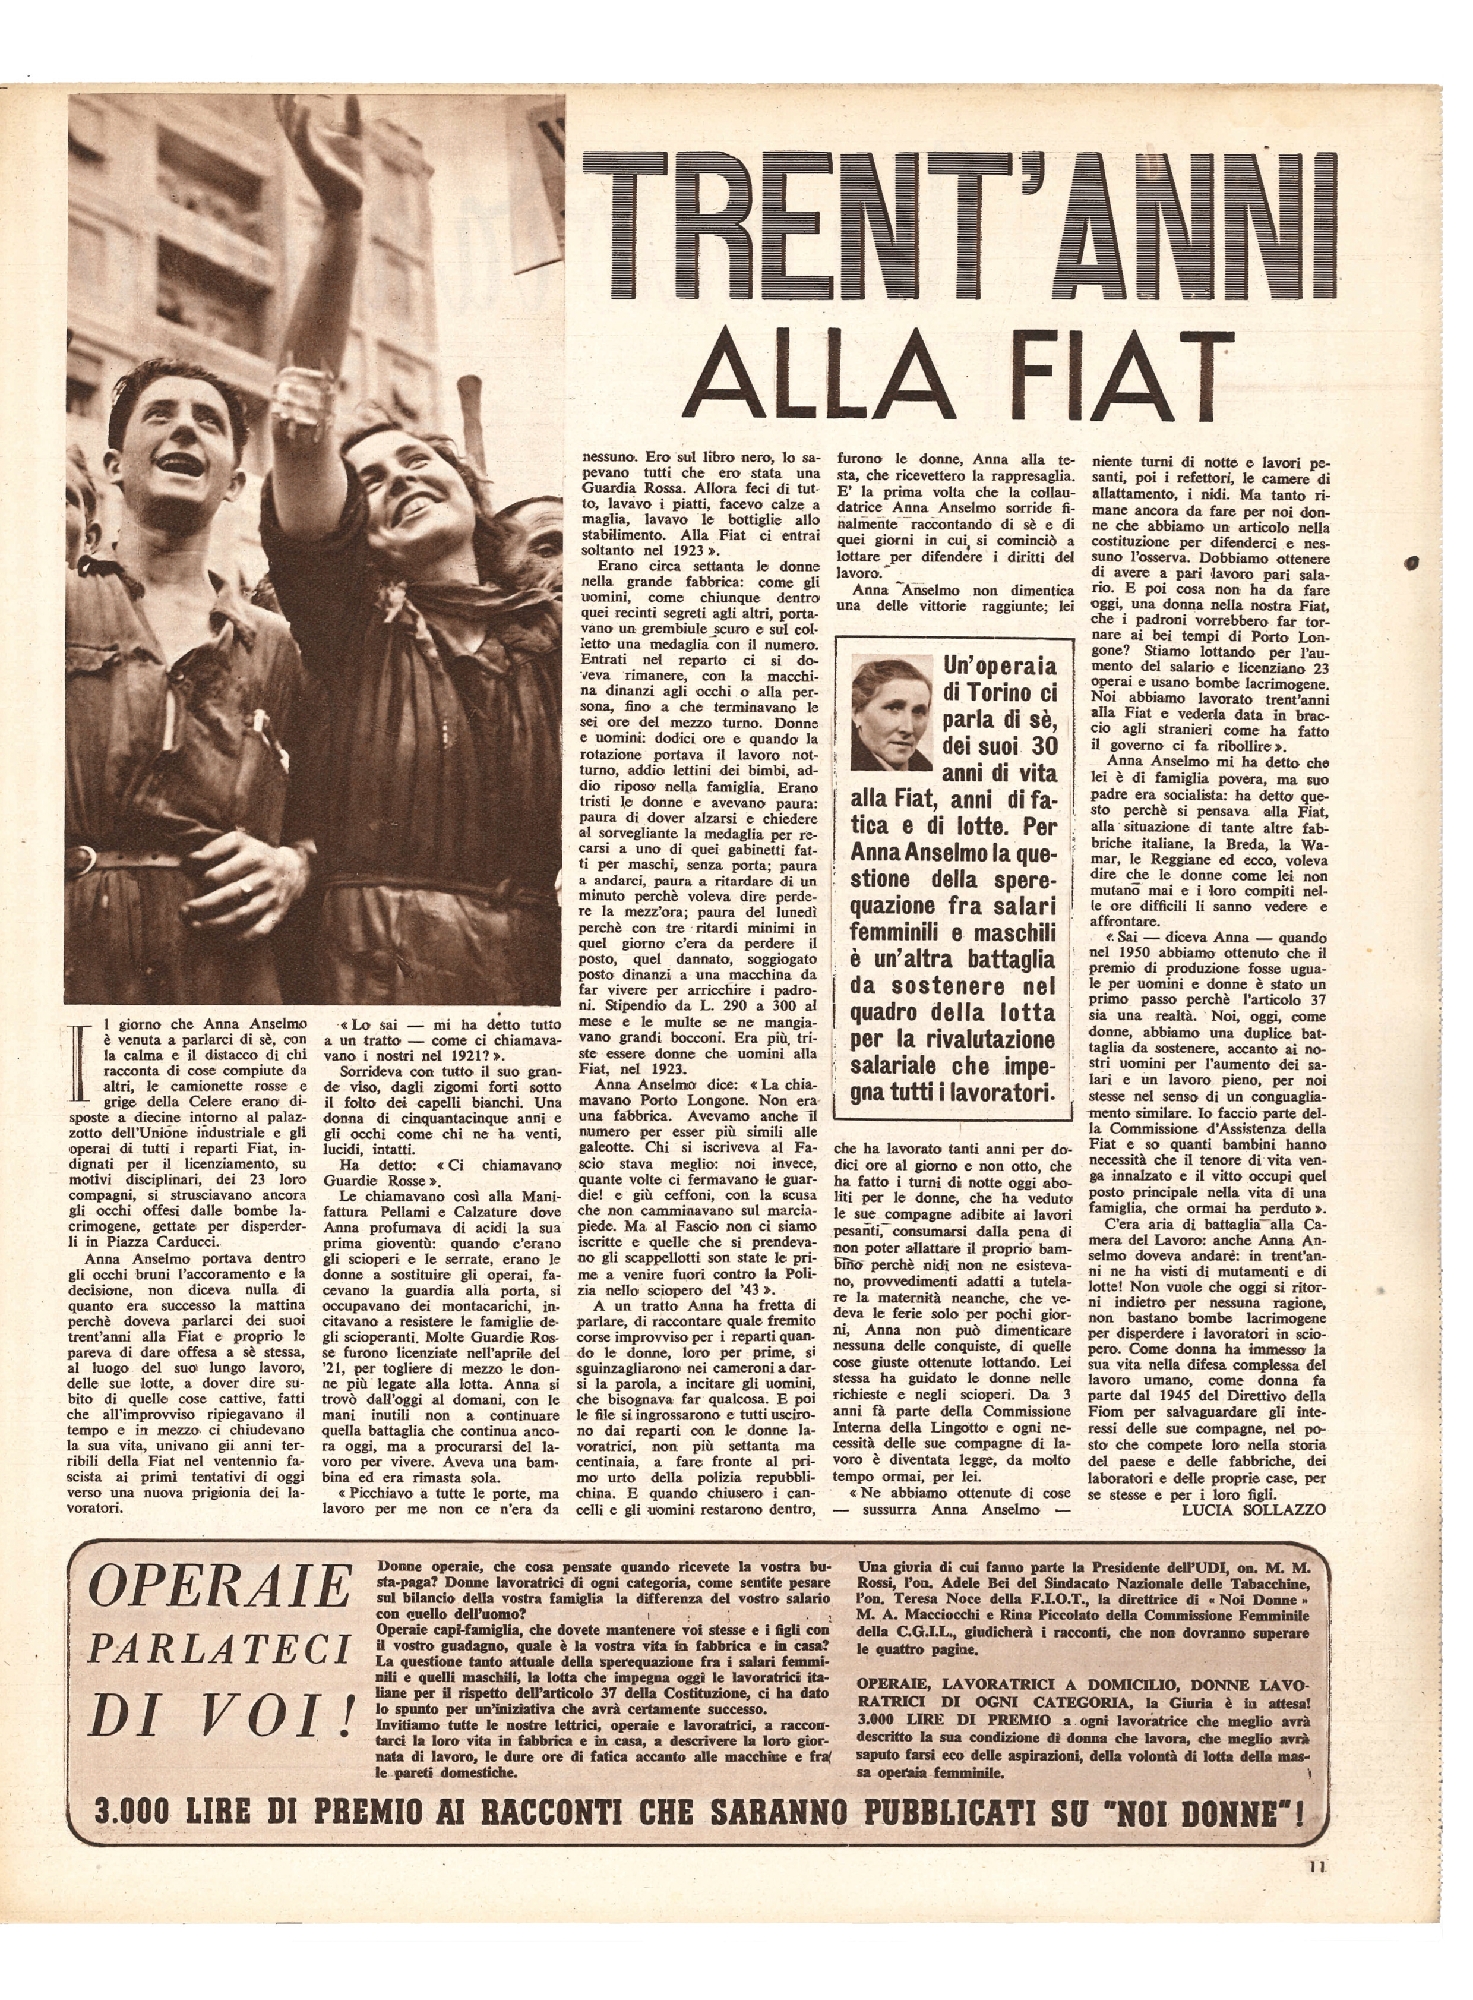 Foto: Parliamo dei giornali per i ragazzi/Luisa Balboni Gallotti: sindaca di Ferrara/30 anni alla FIAT